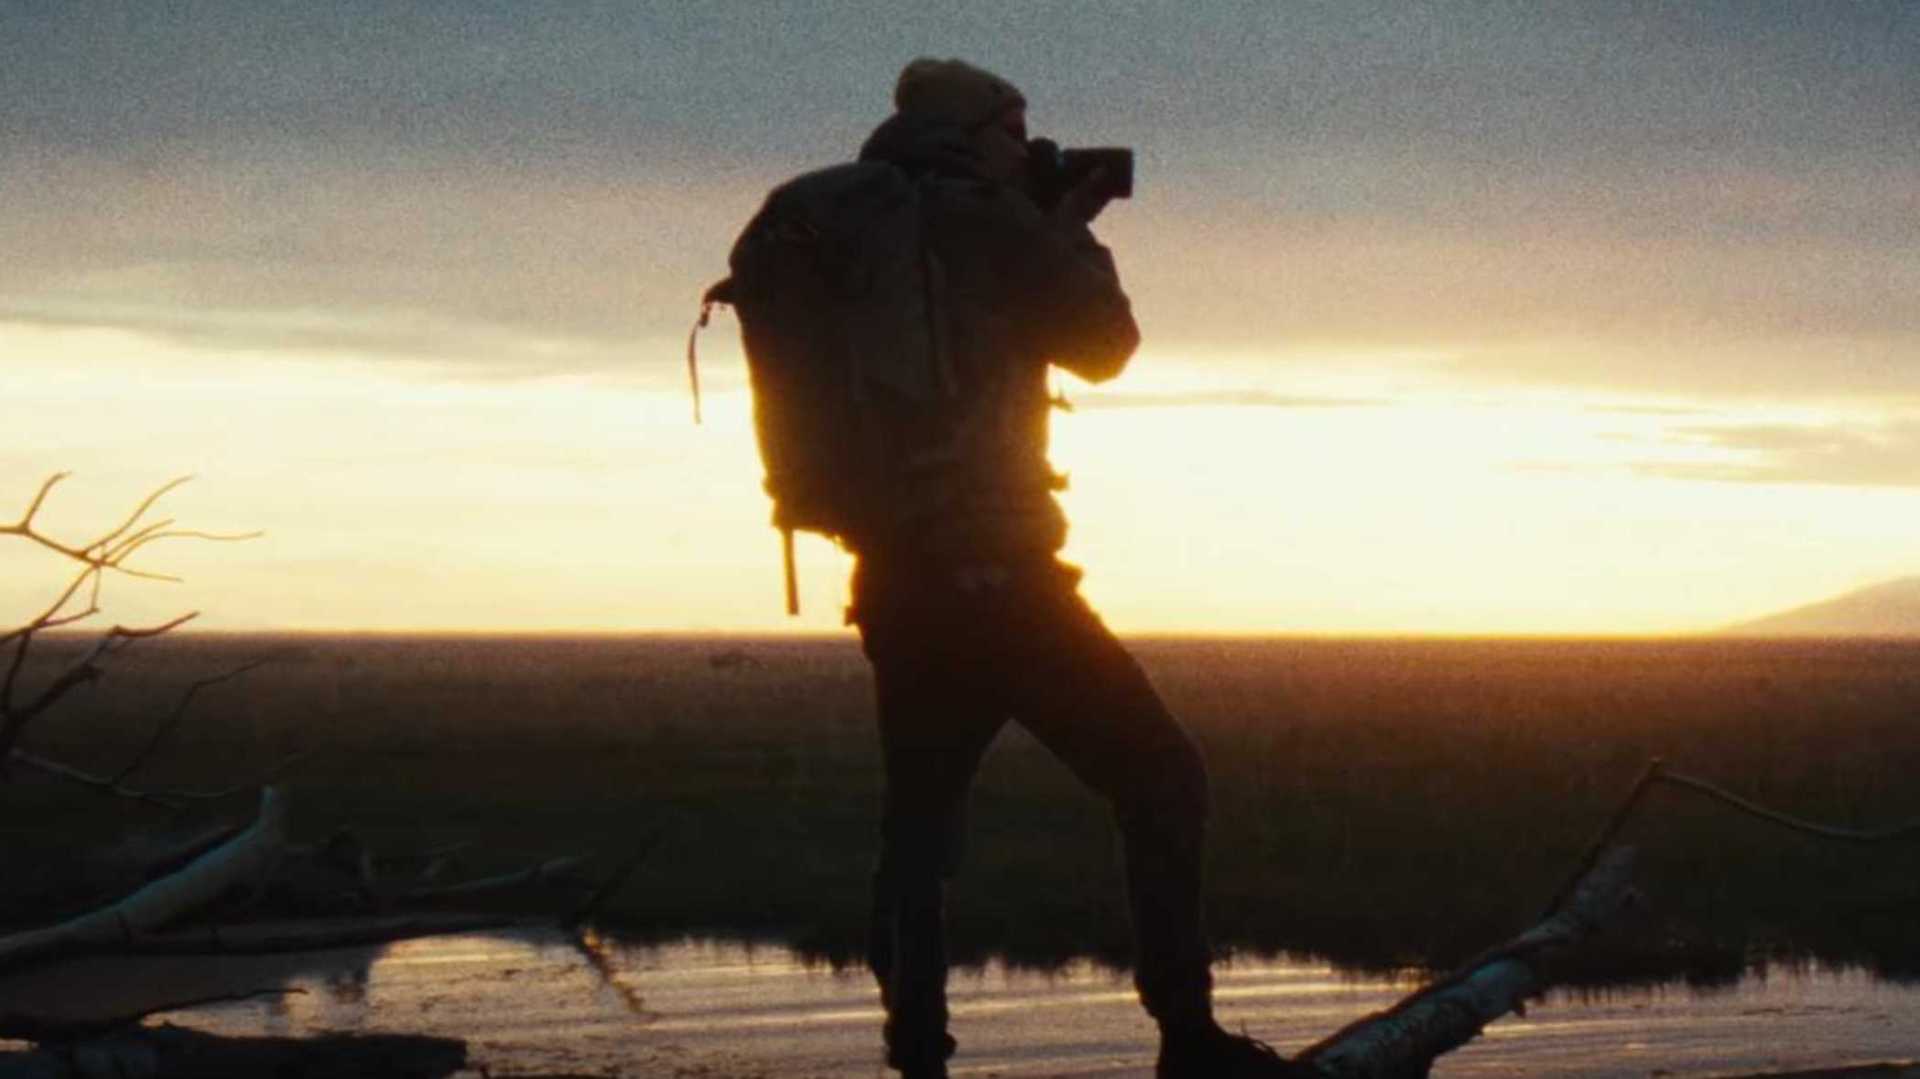 阿拉斯加绝美胶片感旅拍《最后的边疆》